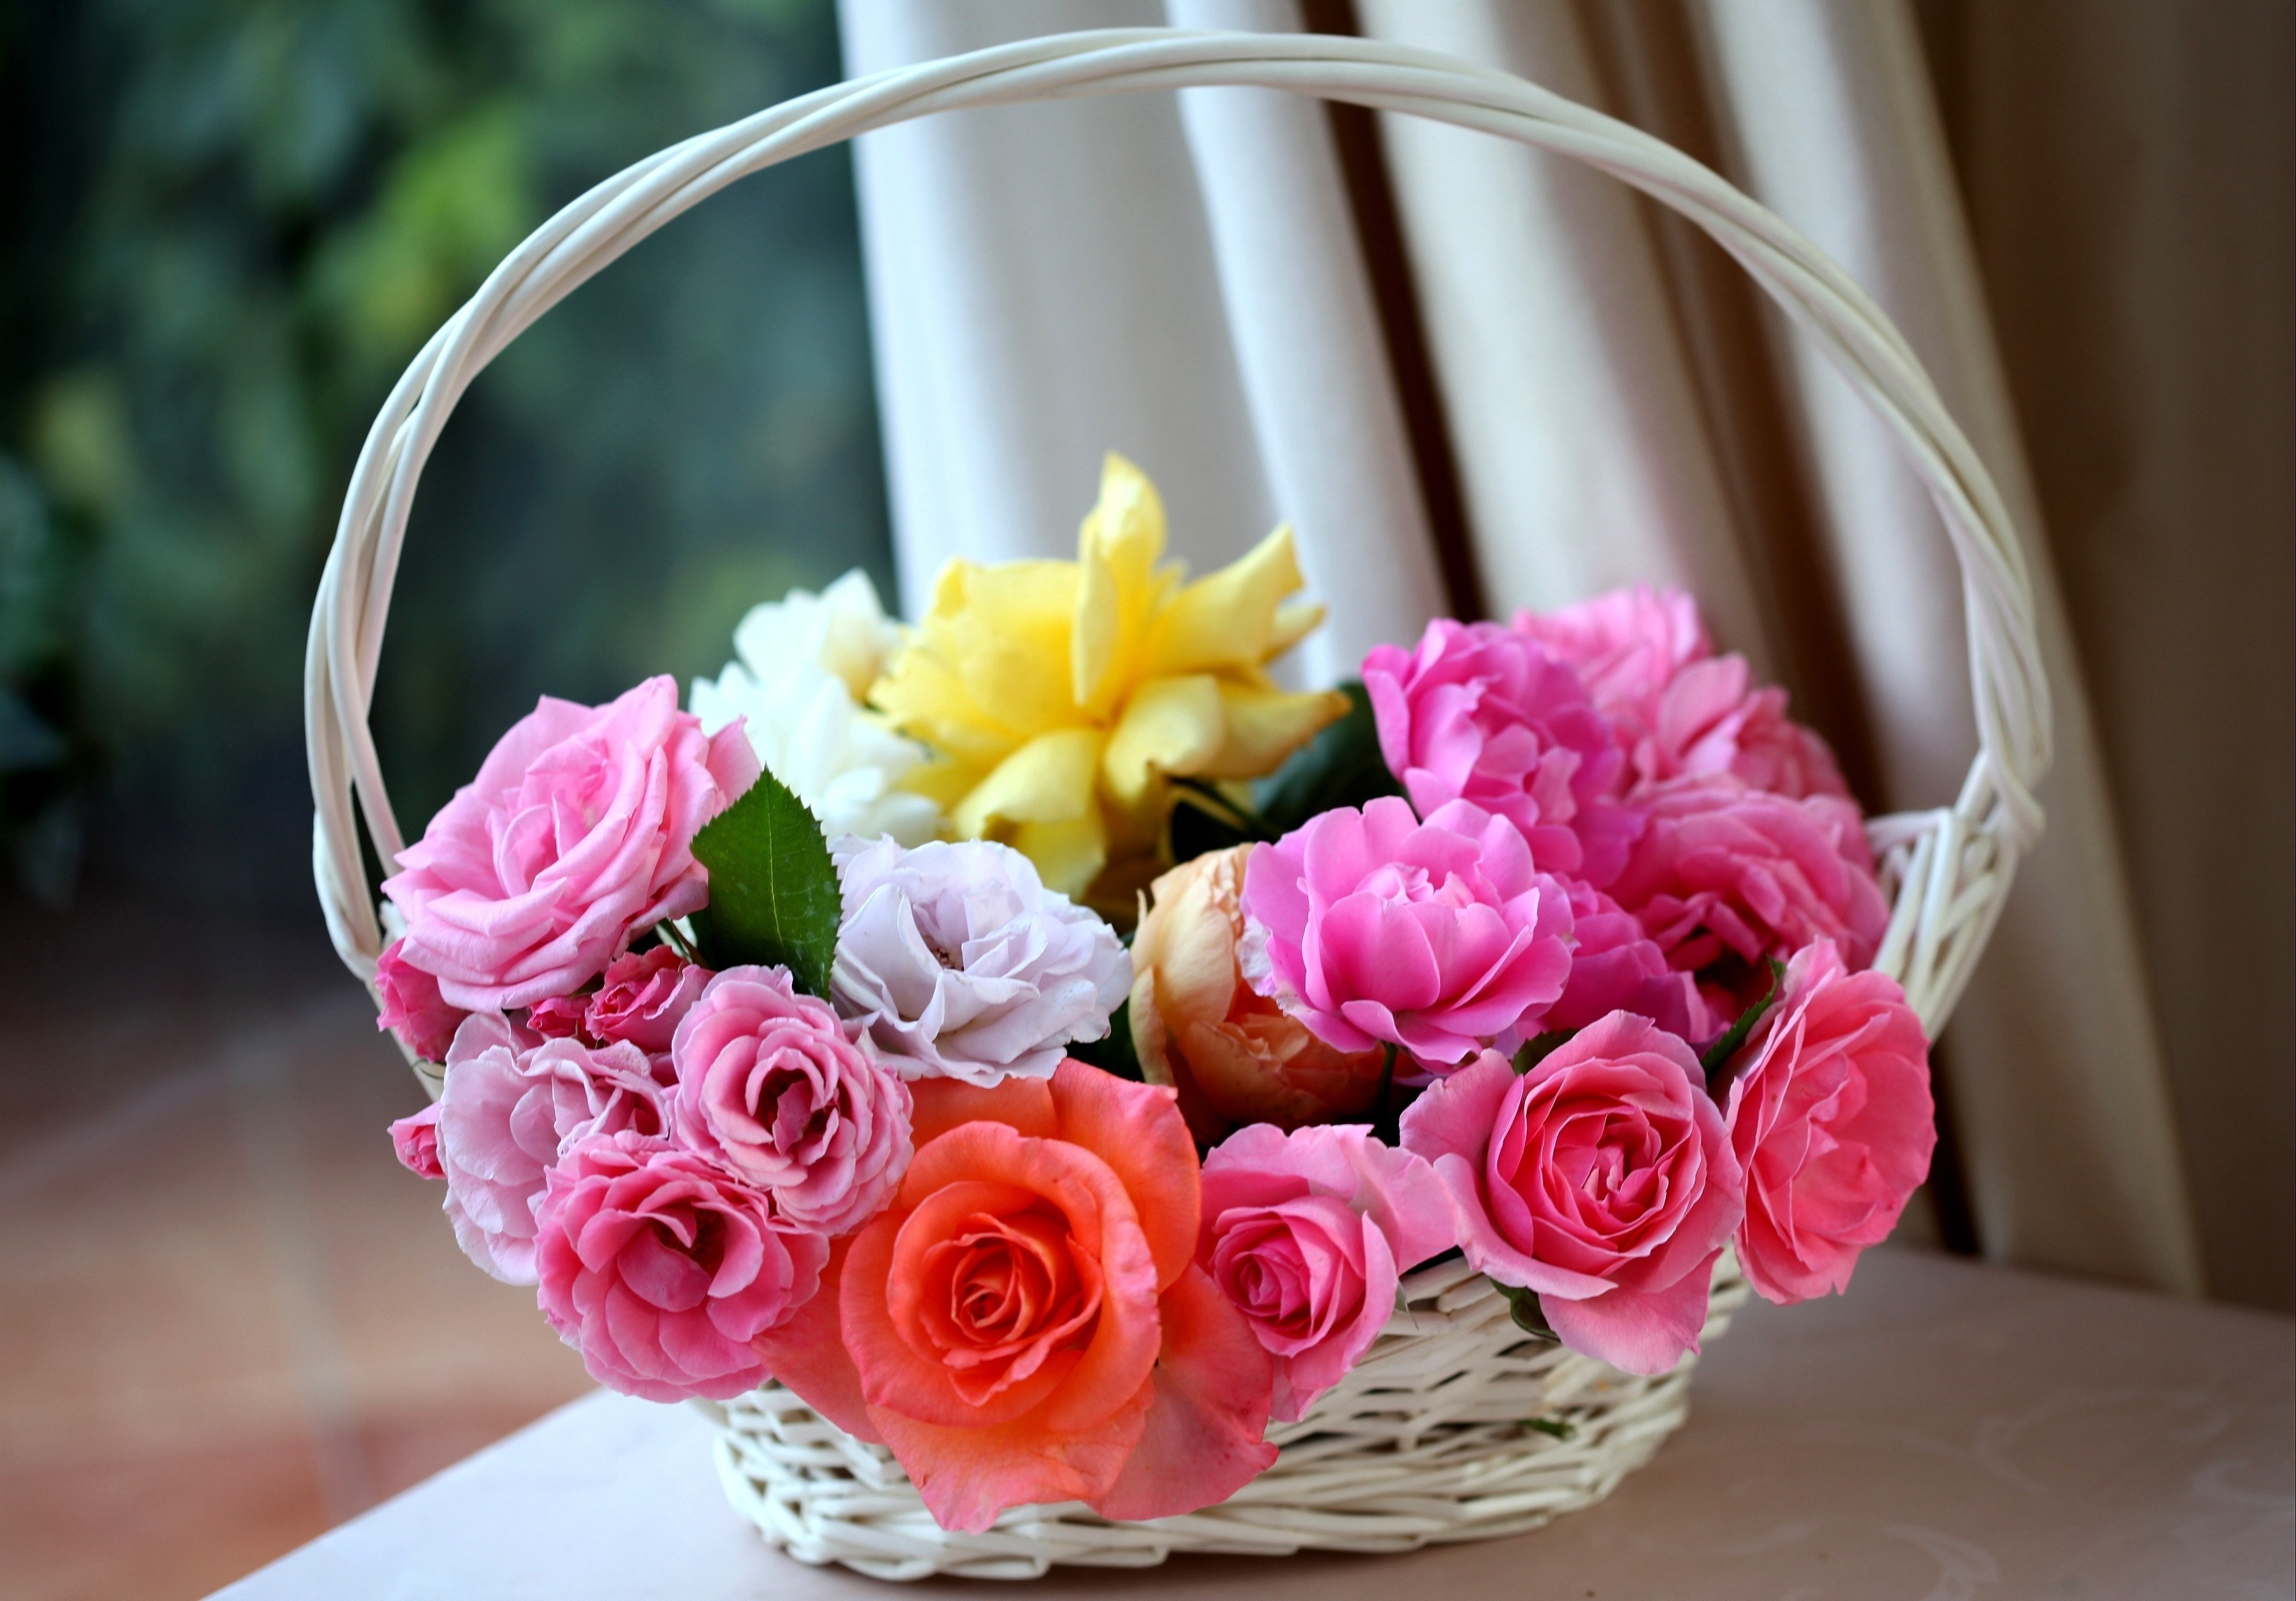 basket, roses, flowers, buds, charm, lukoshko Full HD